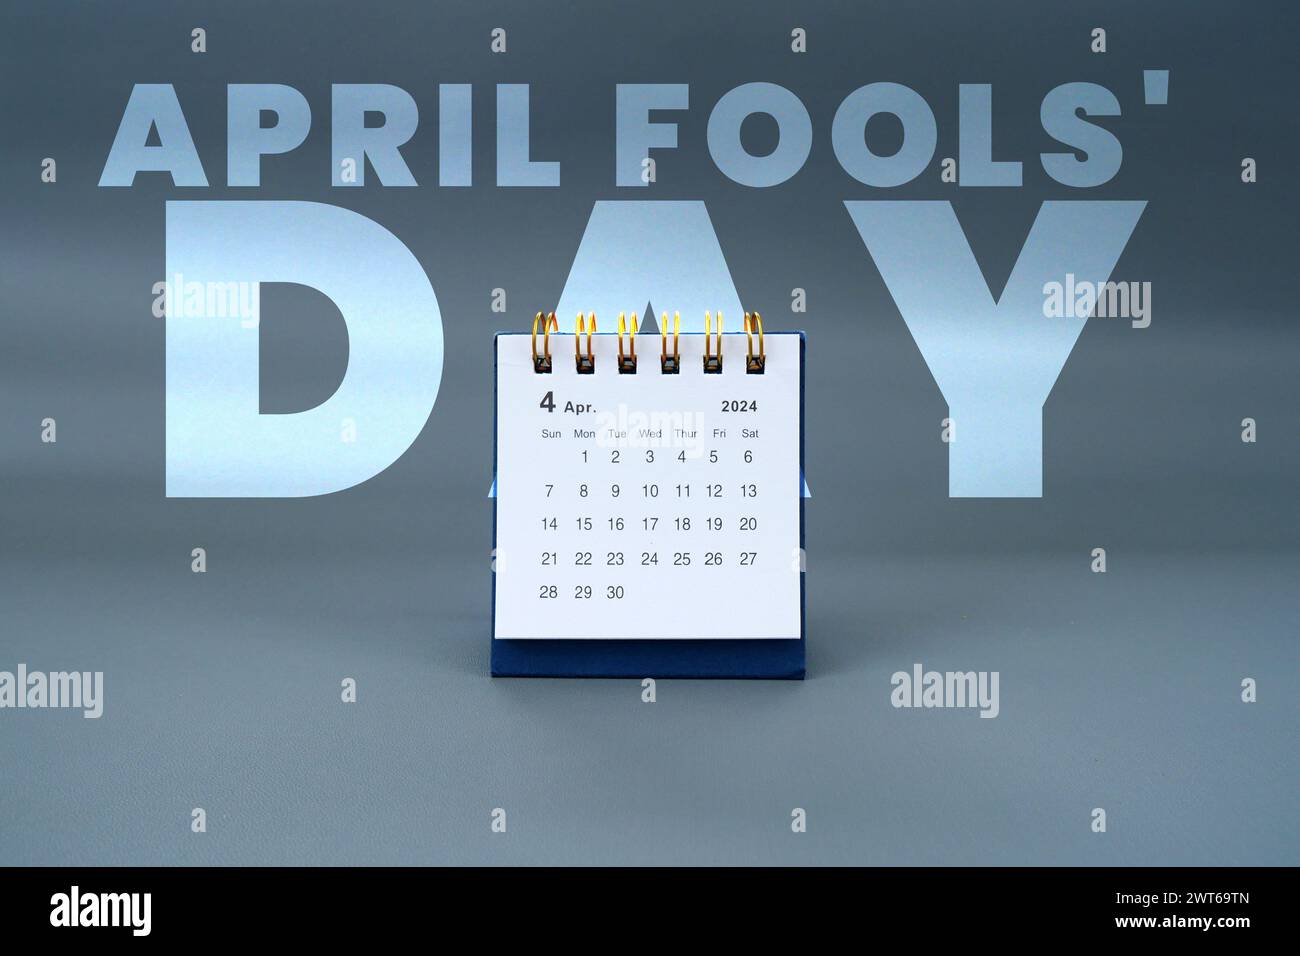 Festa dei folli di aprile con il mese di aprile 2024 Foto Stock